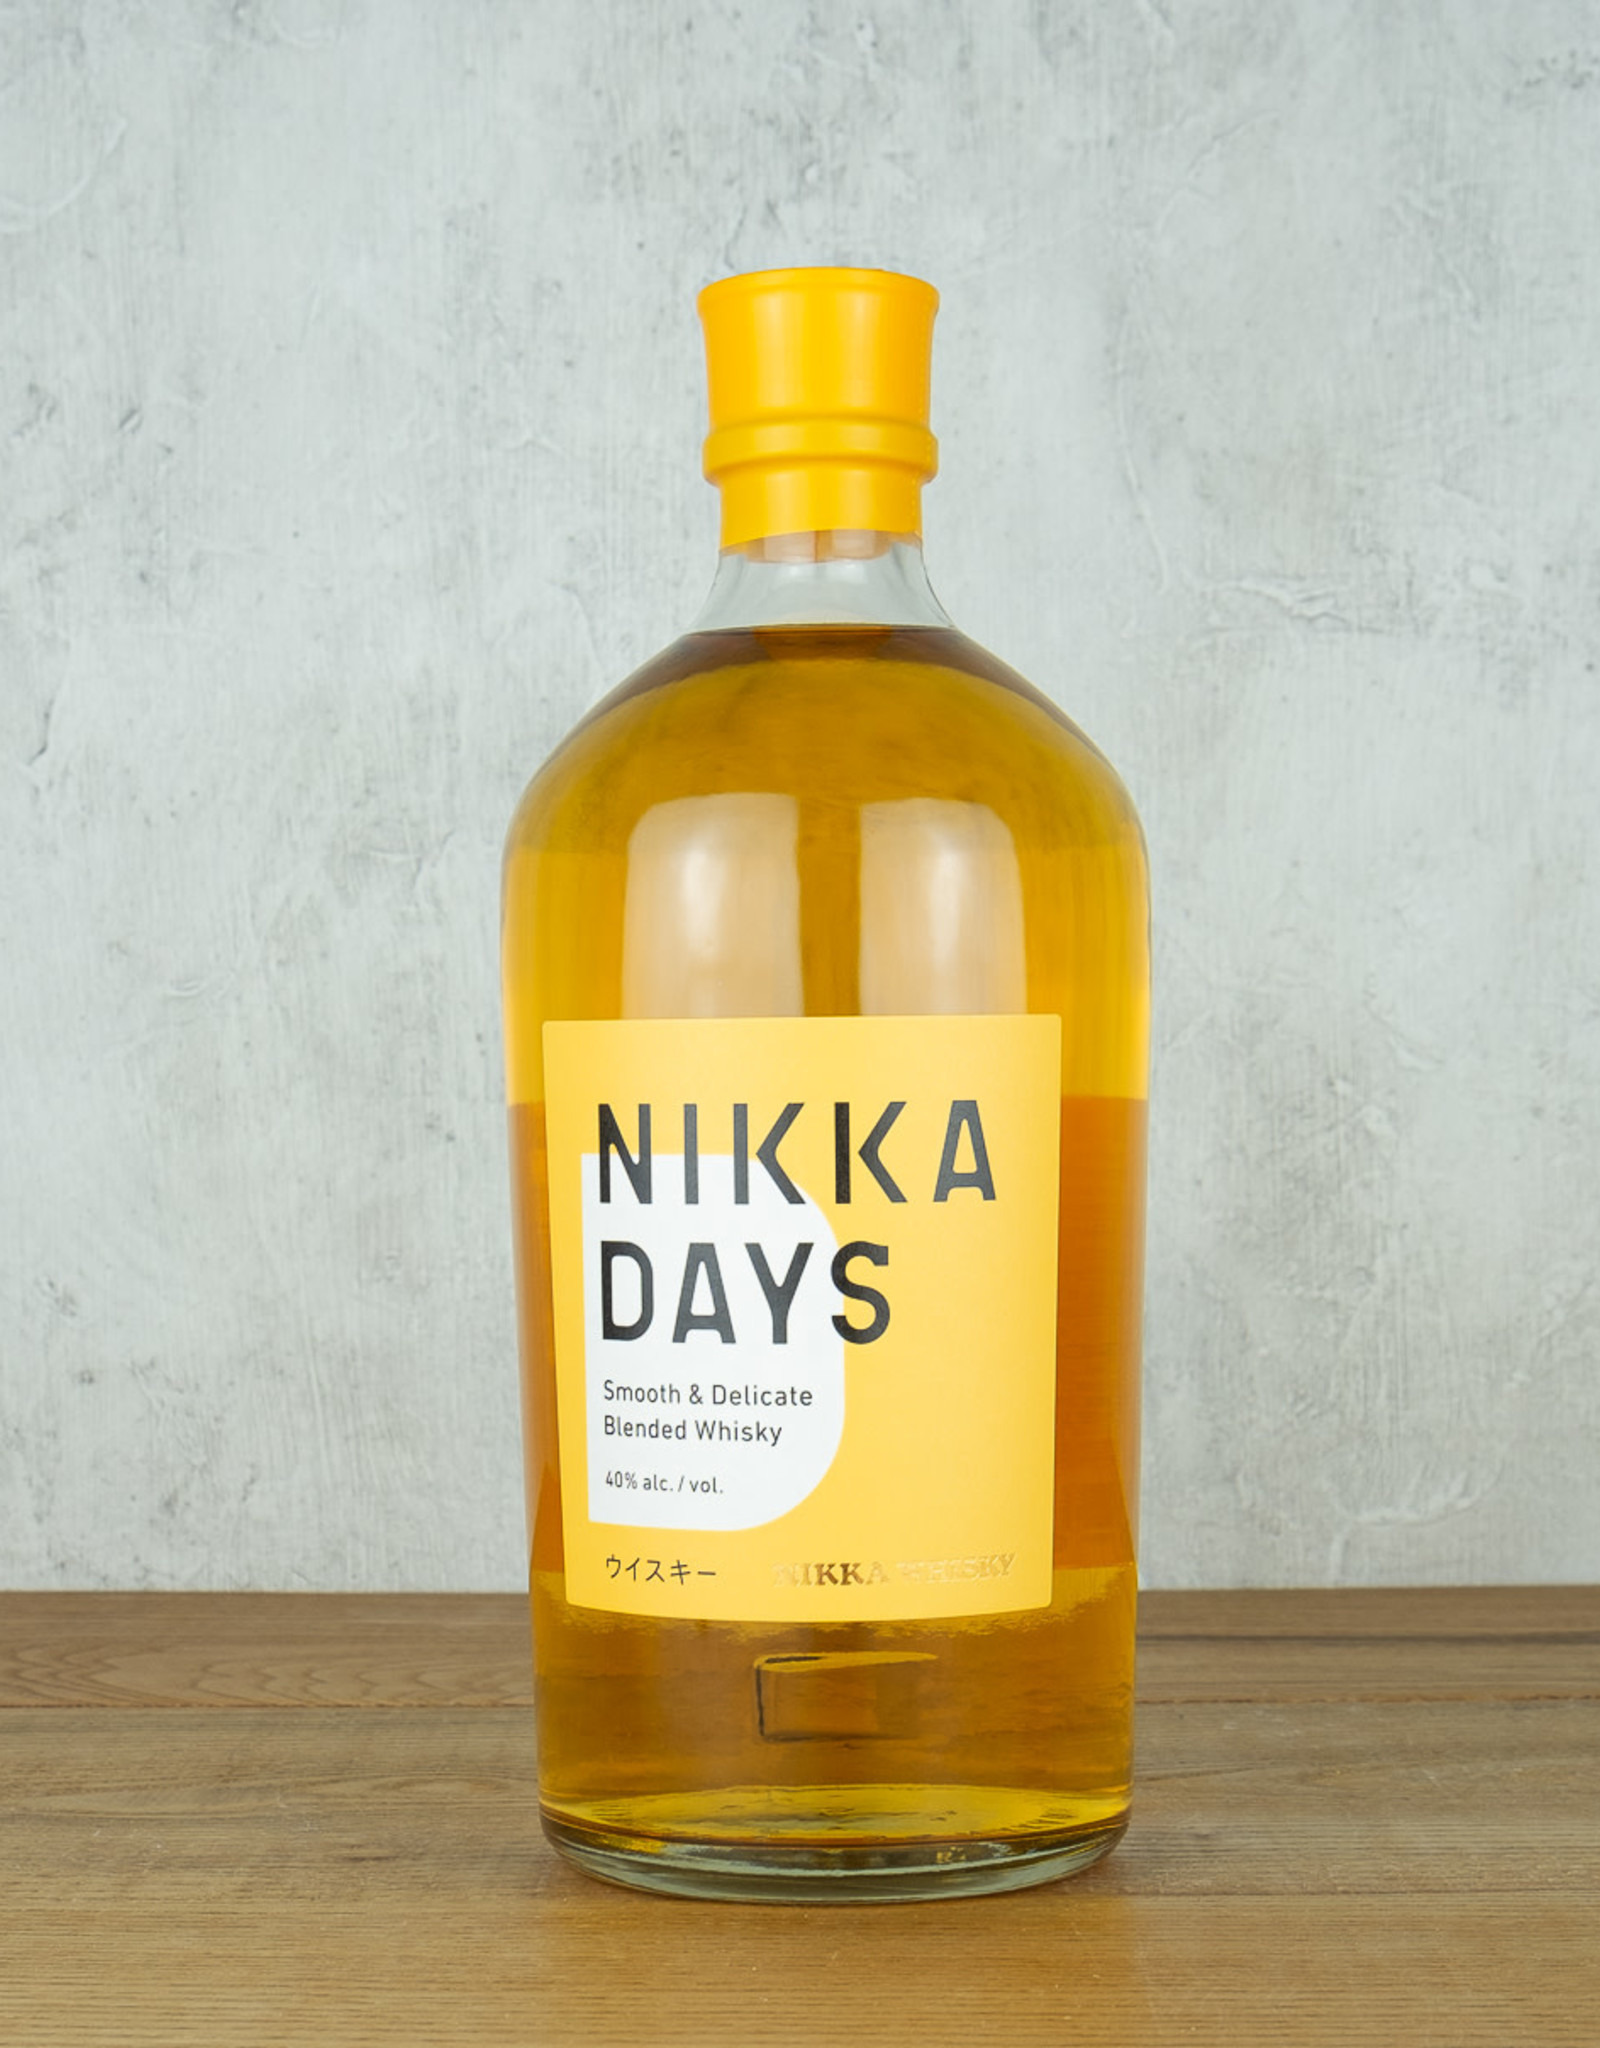 Nikka Days Blended Whisky